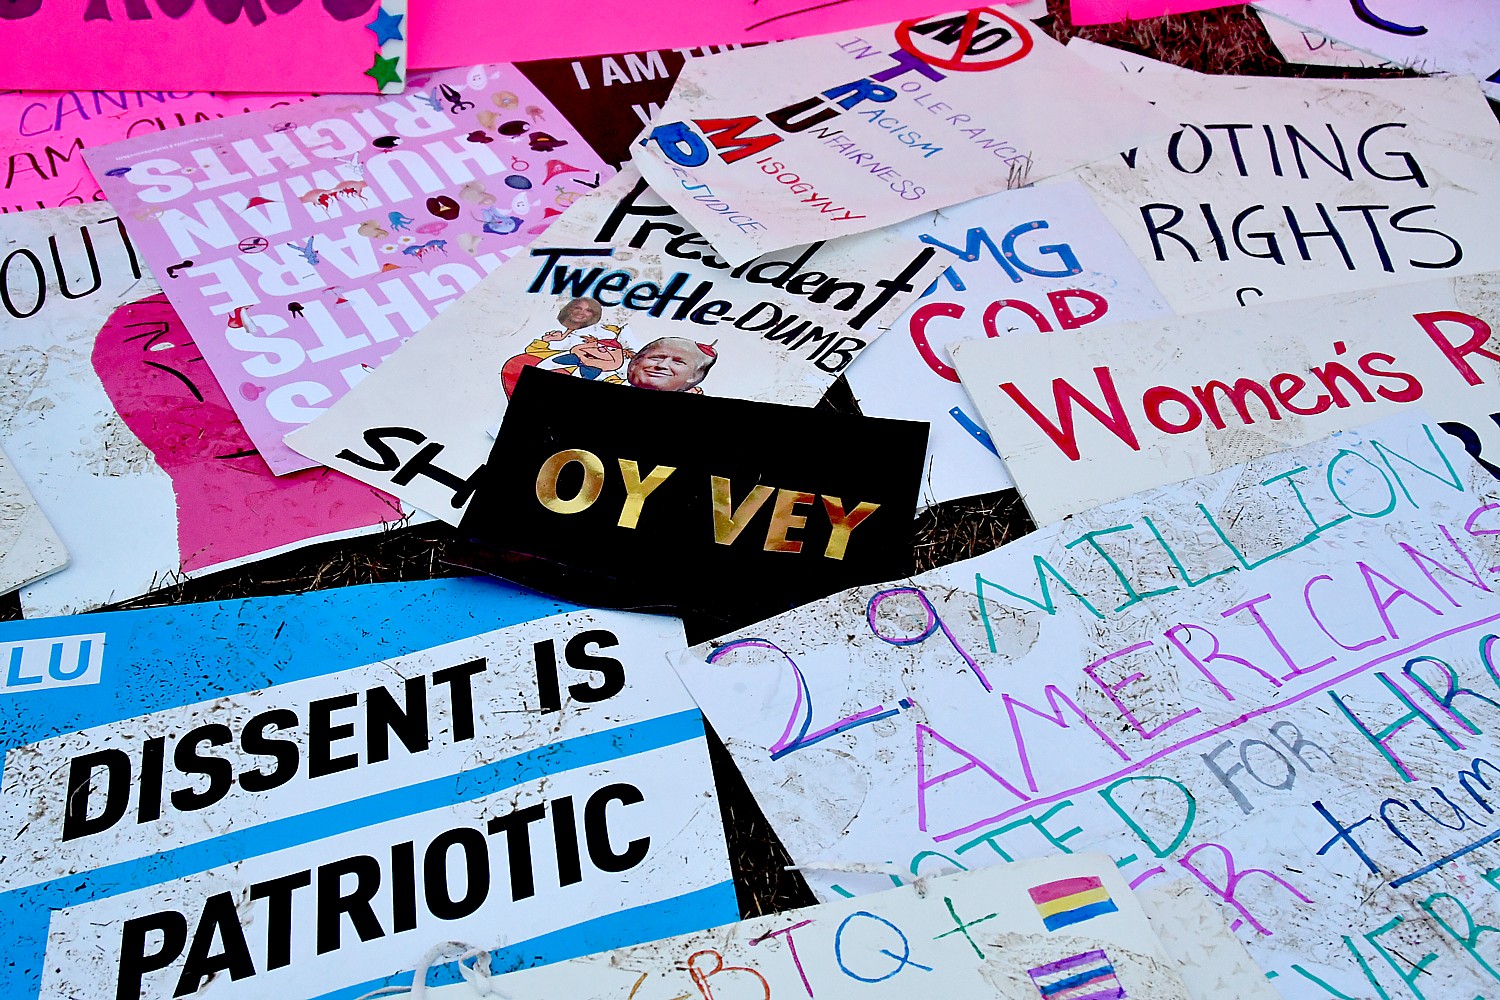 Dissent is patriotic © 2017 Karen Rubin/news-photos-features.com